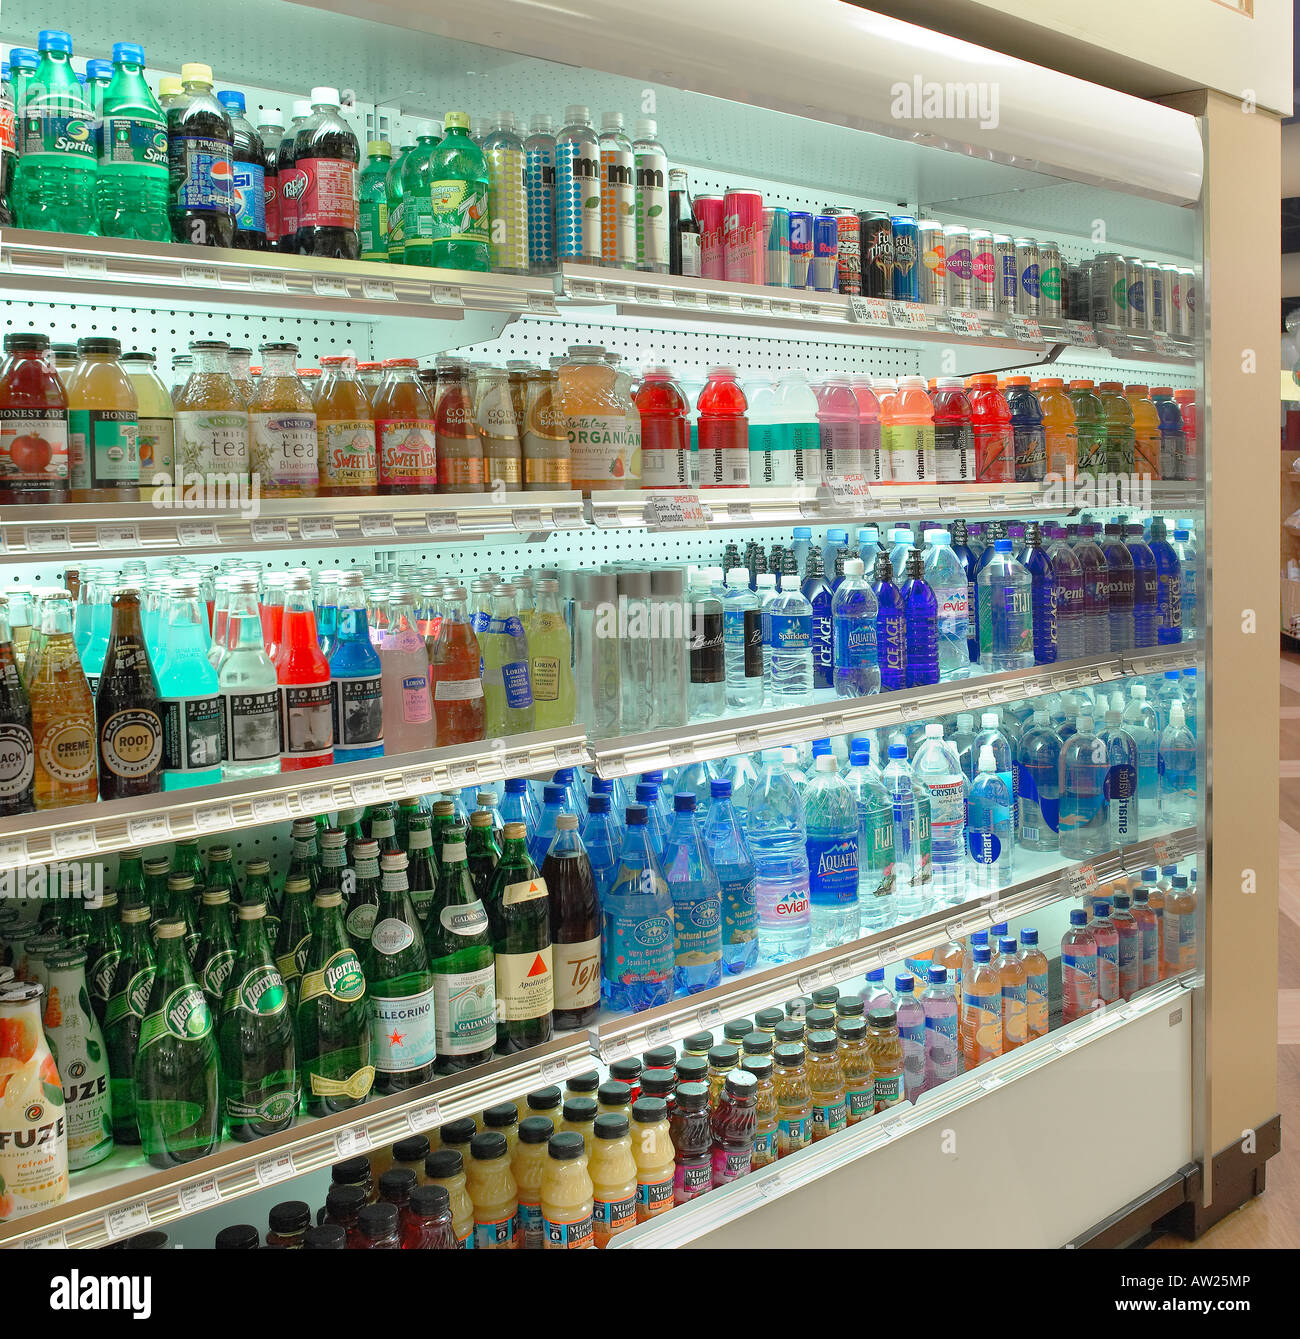 Boire des boissons au cas du marché alimentaire Store, San Jose California USA Banque D'Images